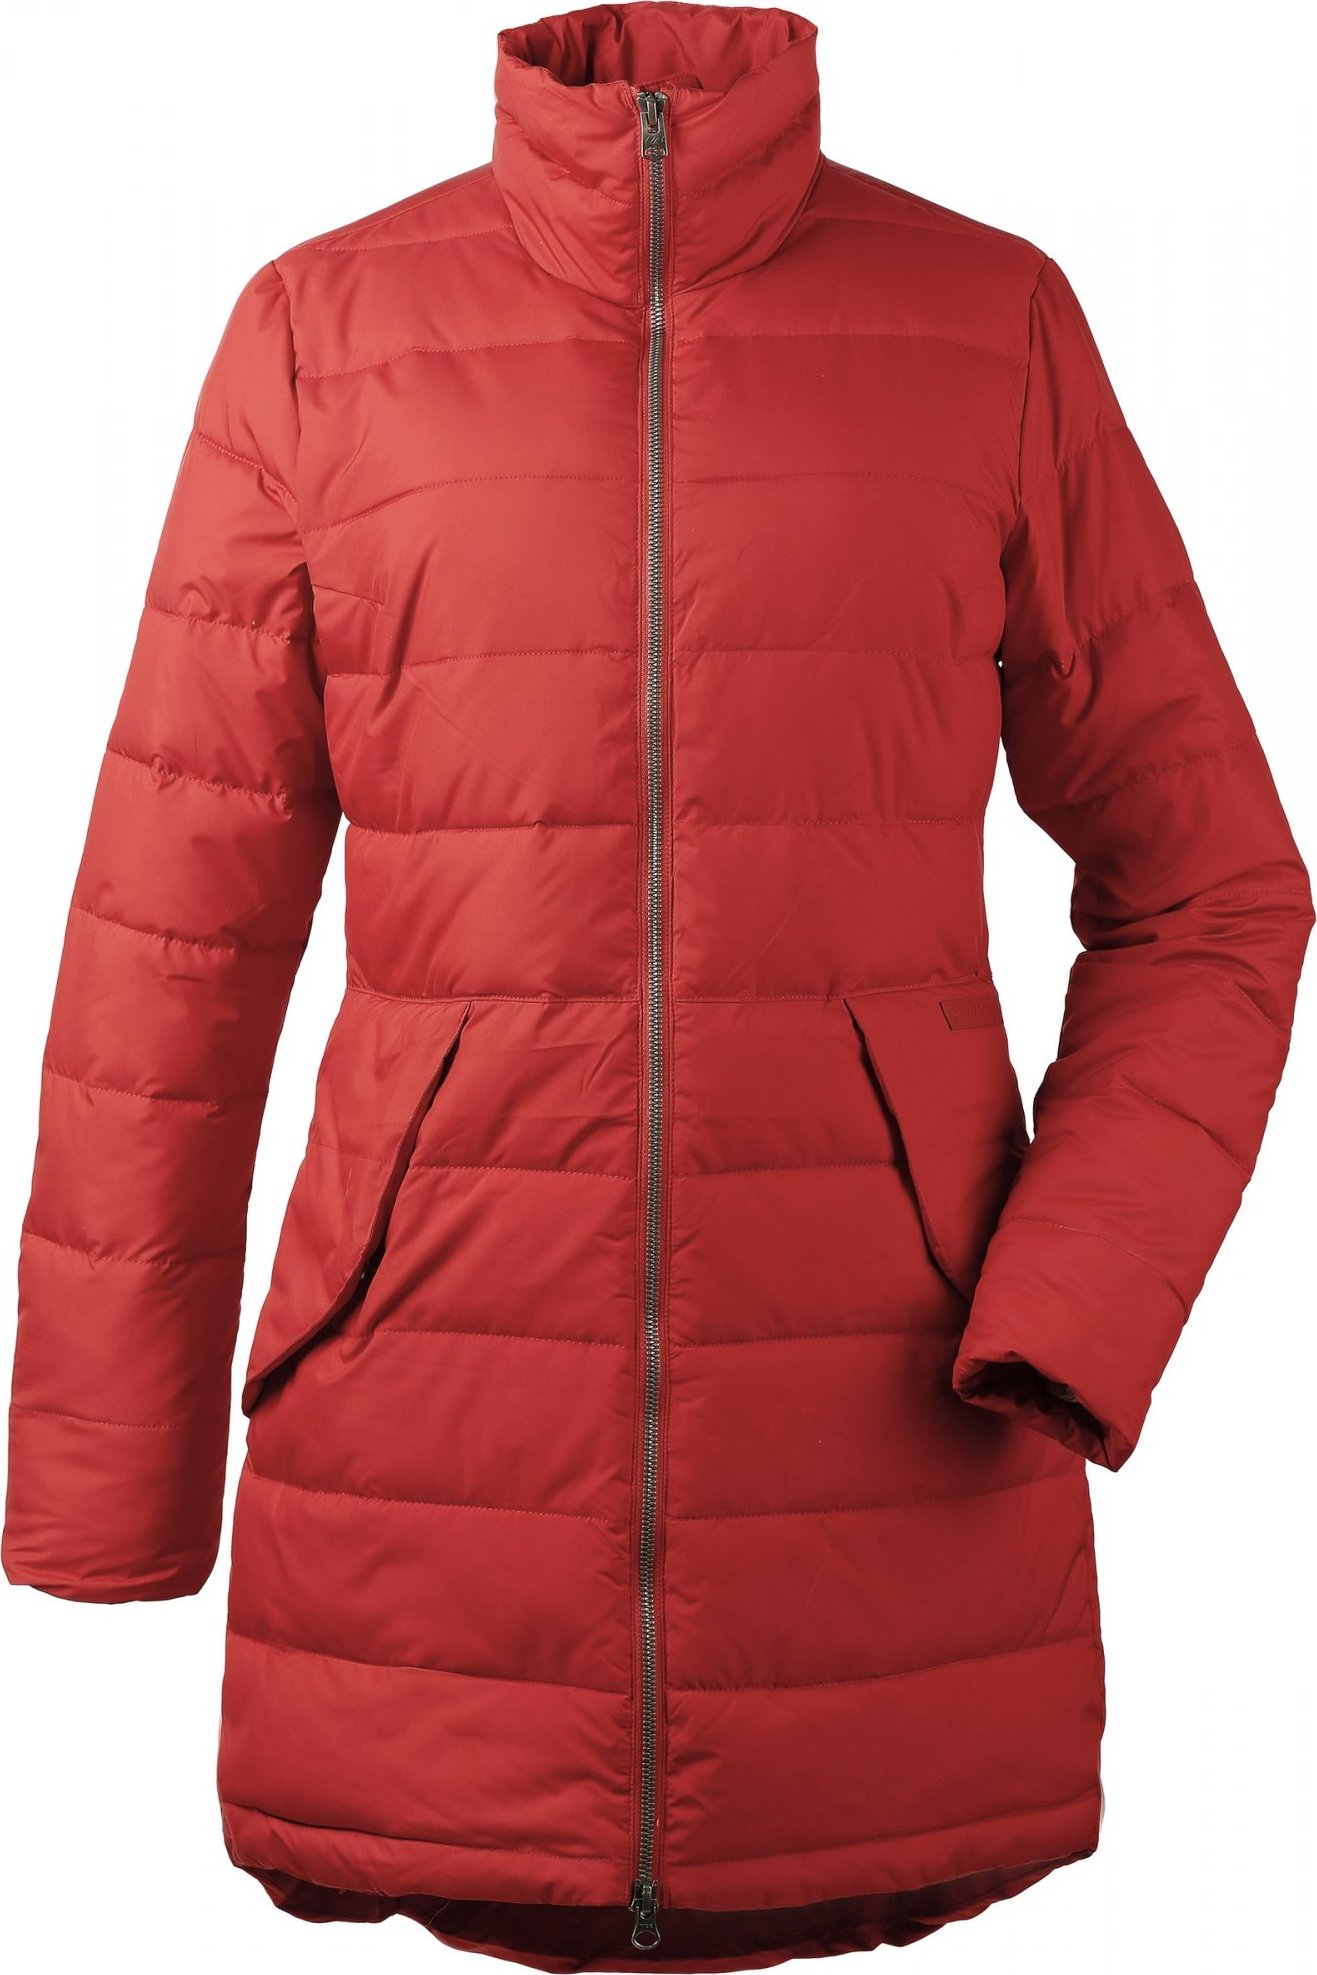 Dámský zimní kabát DIDRIKSONS Hildur oranžový Velikost: 42